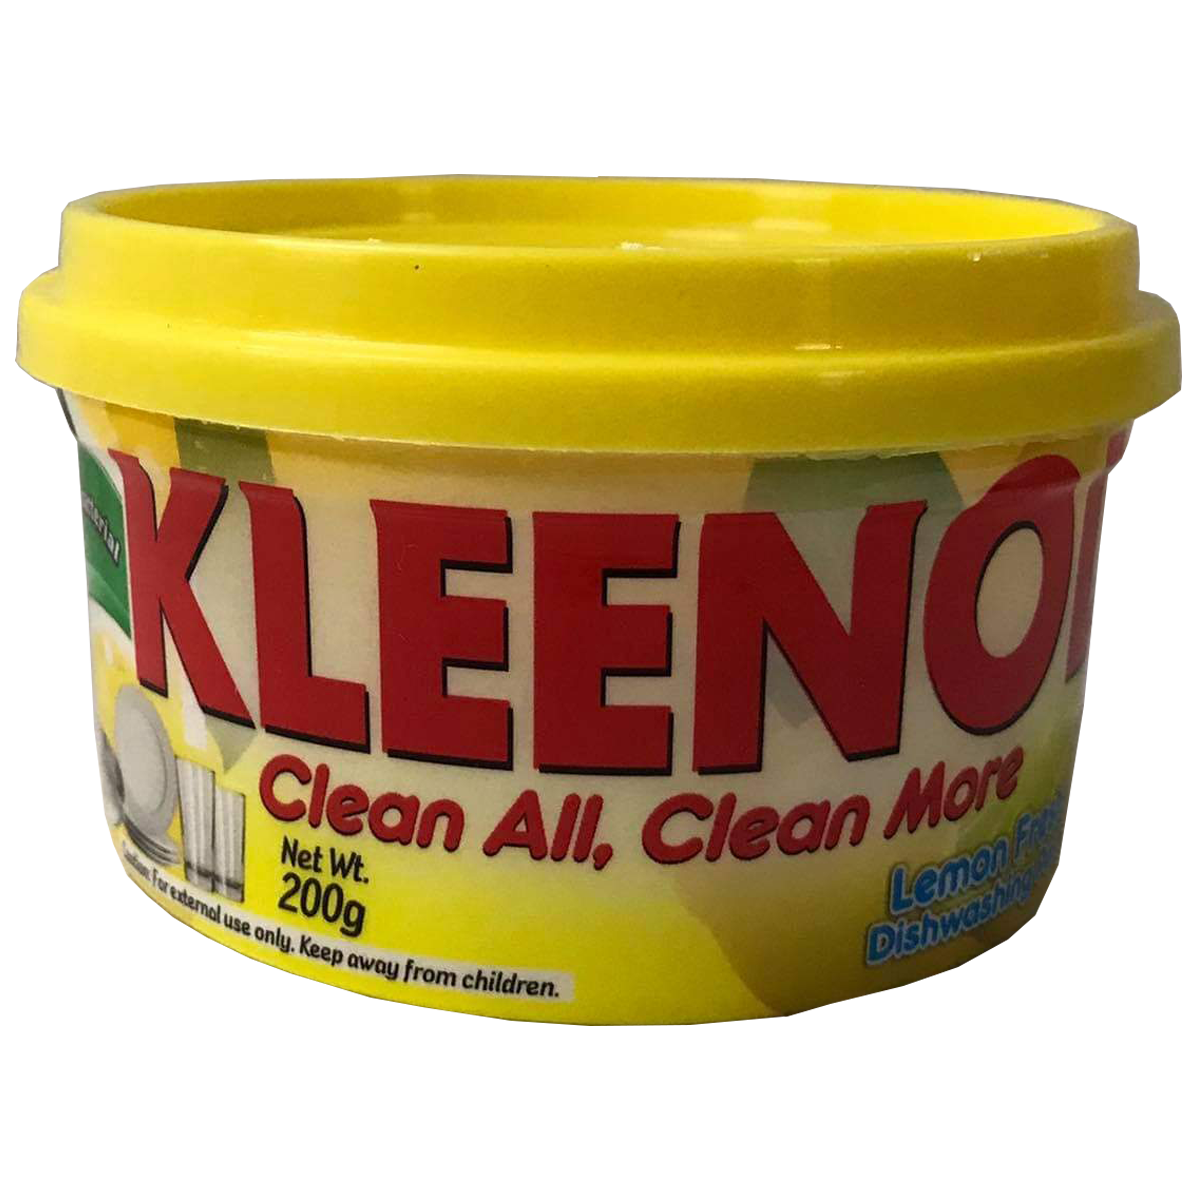 Kleenol Dishwashing Paste, 200g